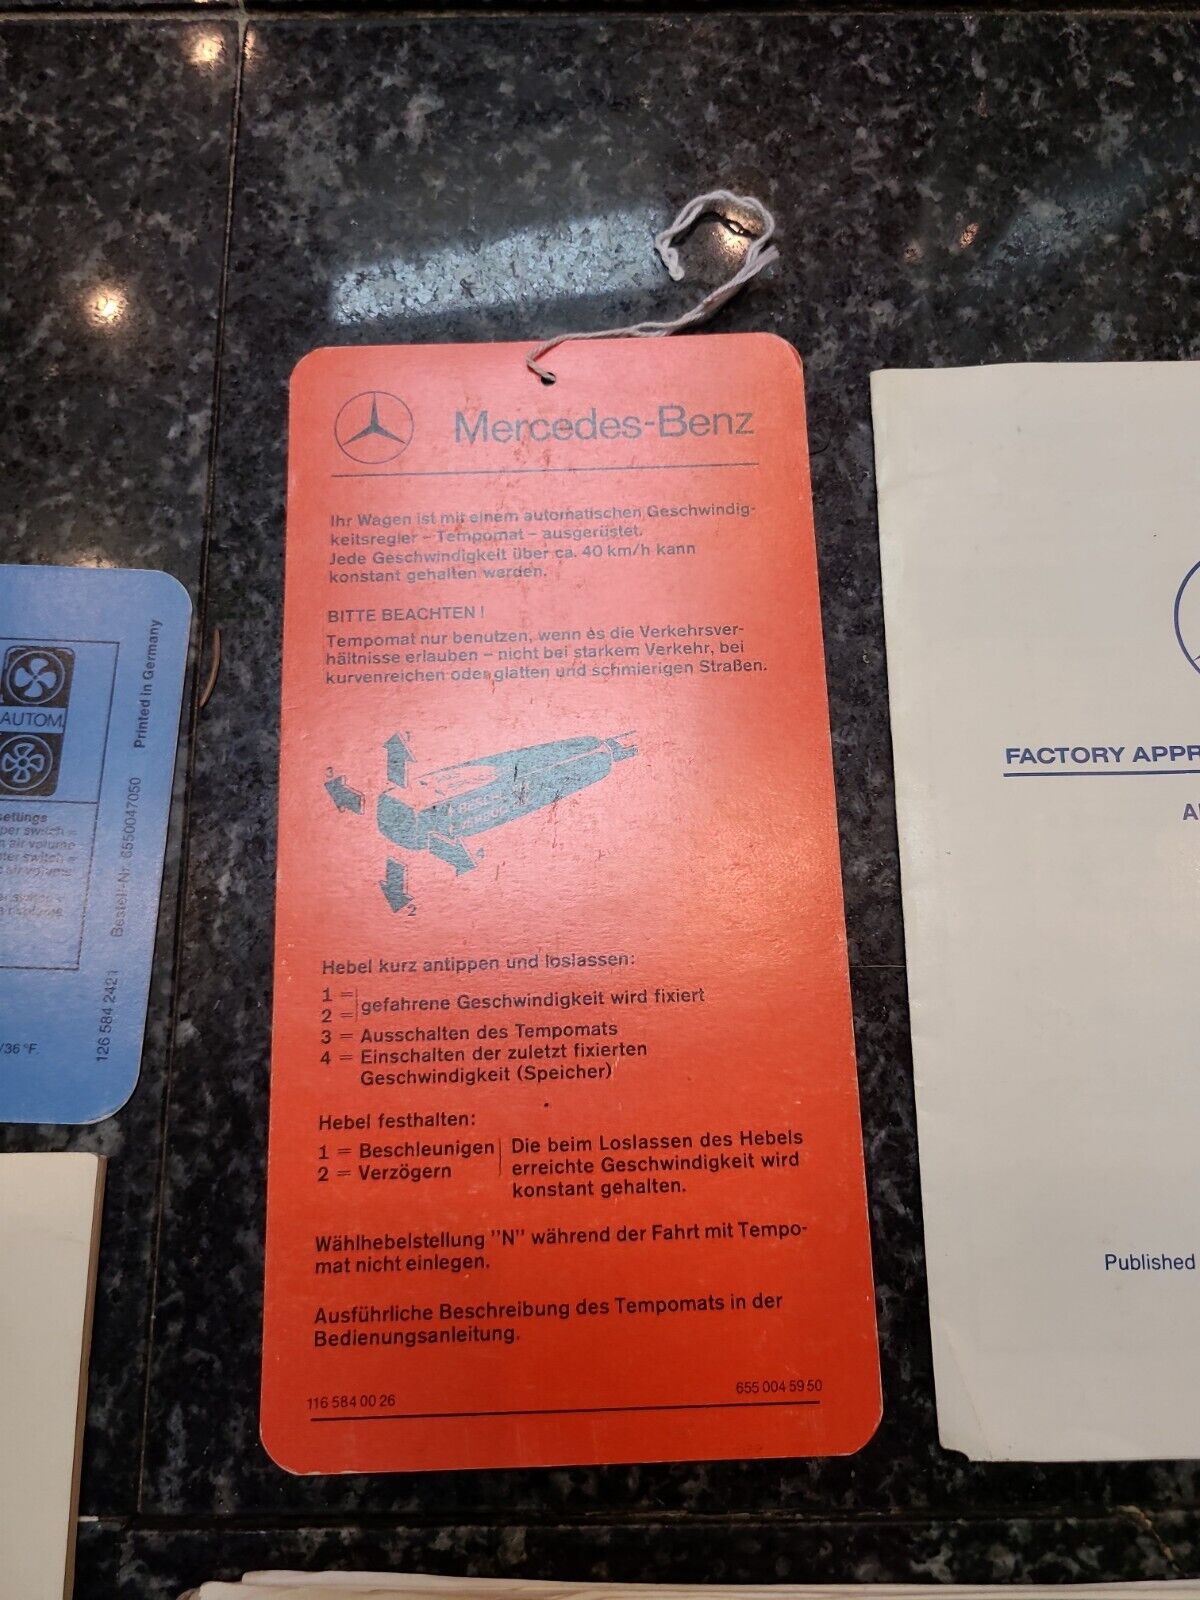 1987 Mercedes 560SL owners manual set maintenance booklet holder etc r107 oem